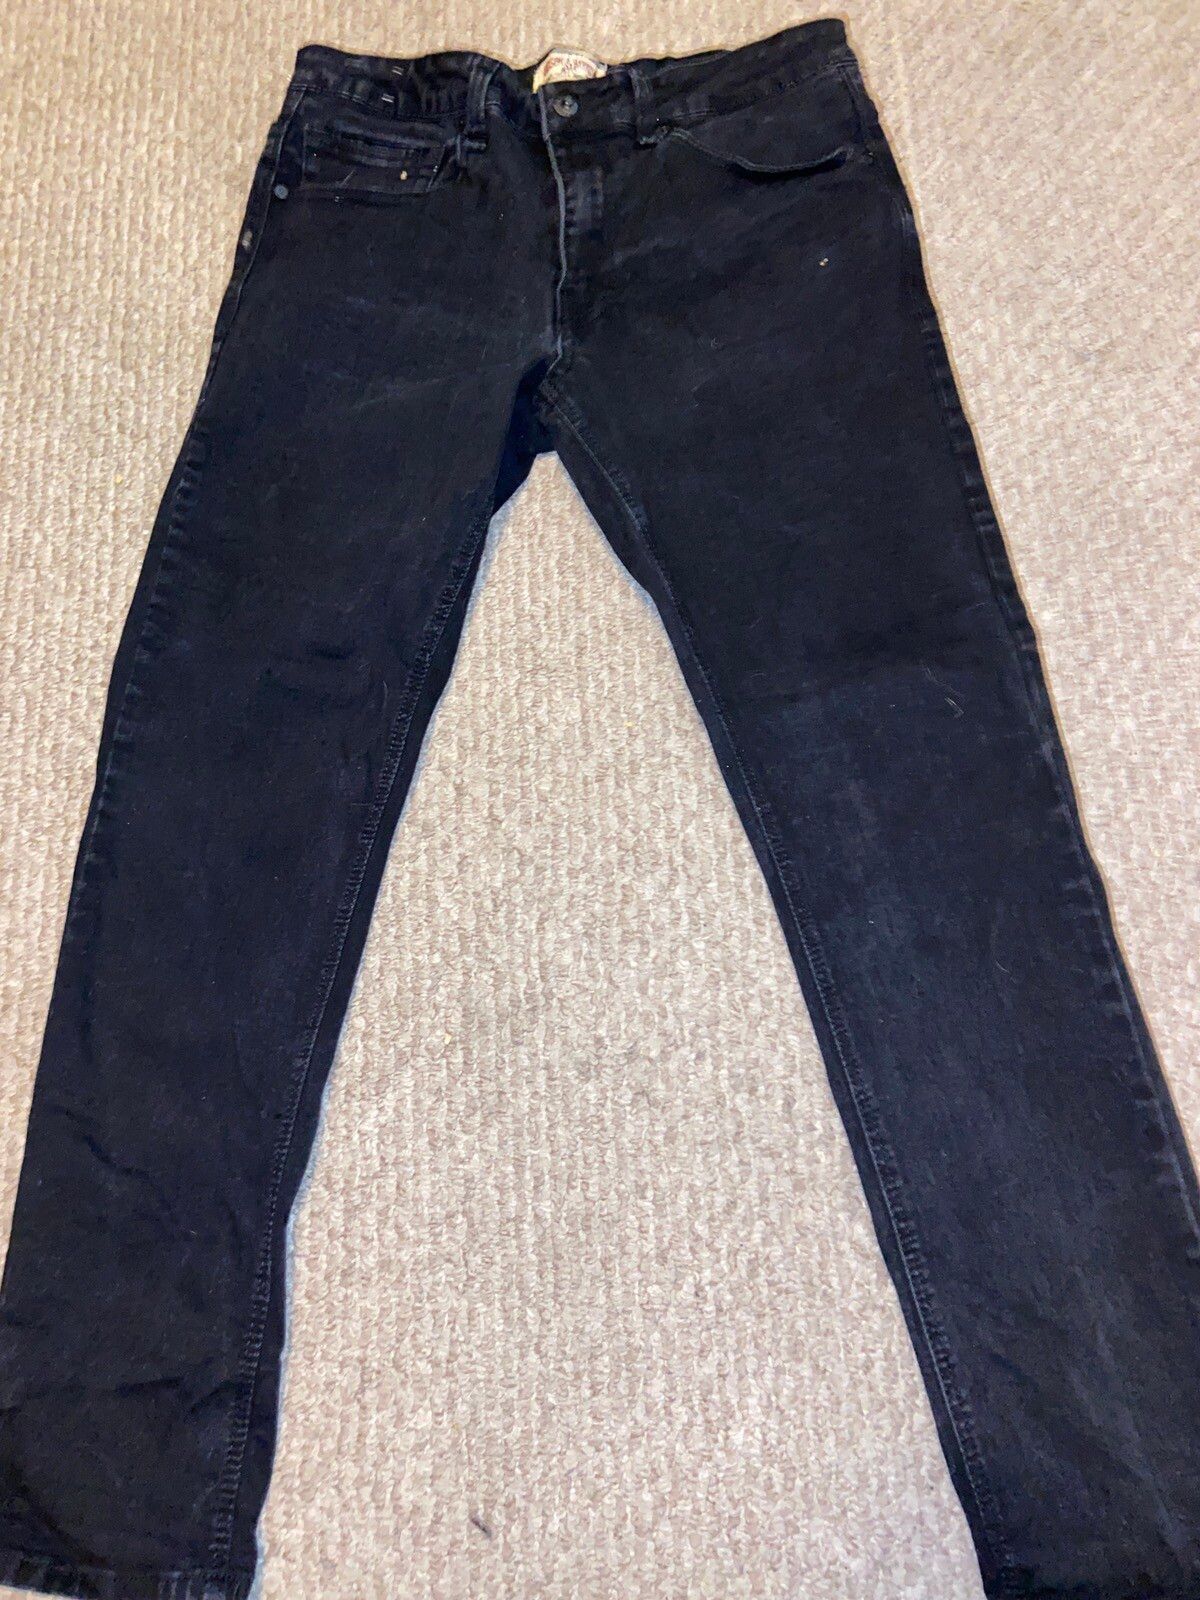 Hudson & Barrow Hudson and barrow black denim jeans | Grailed